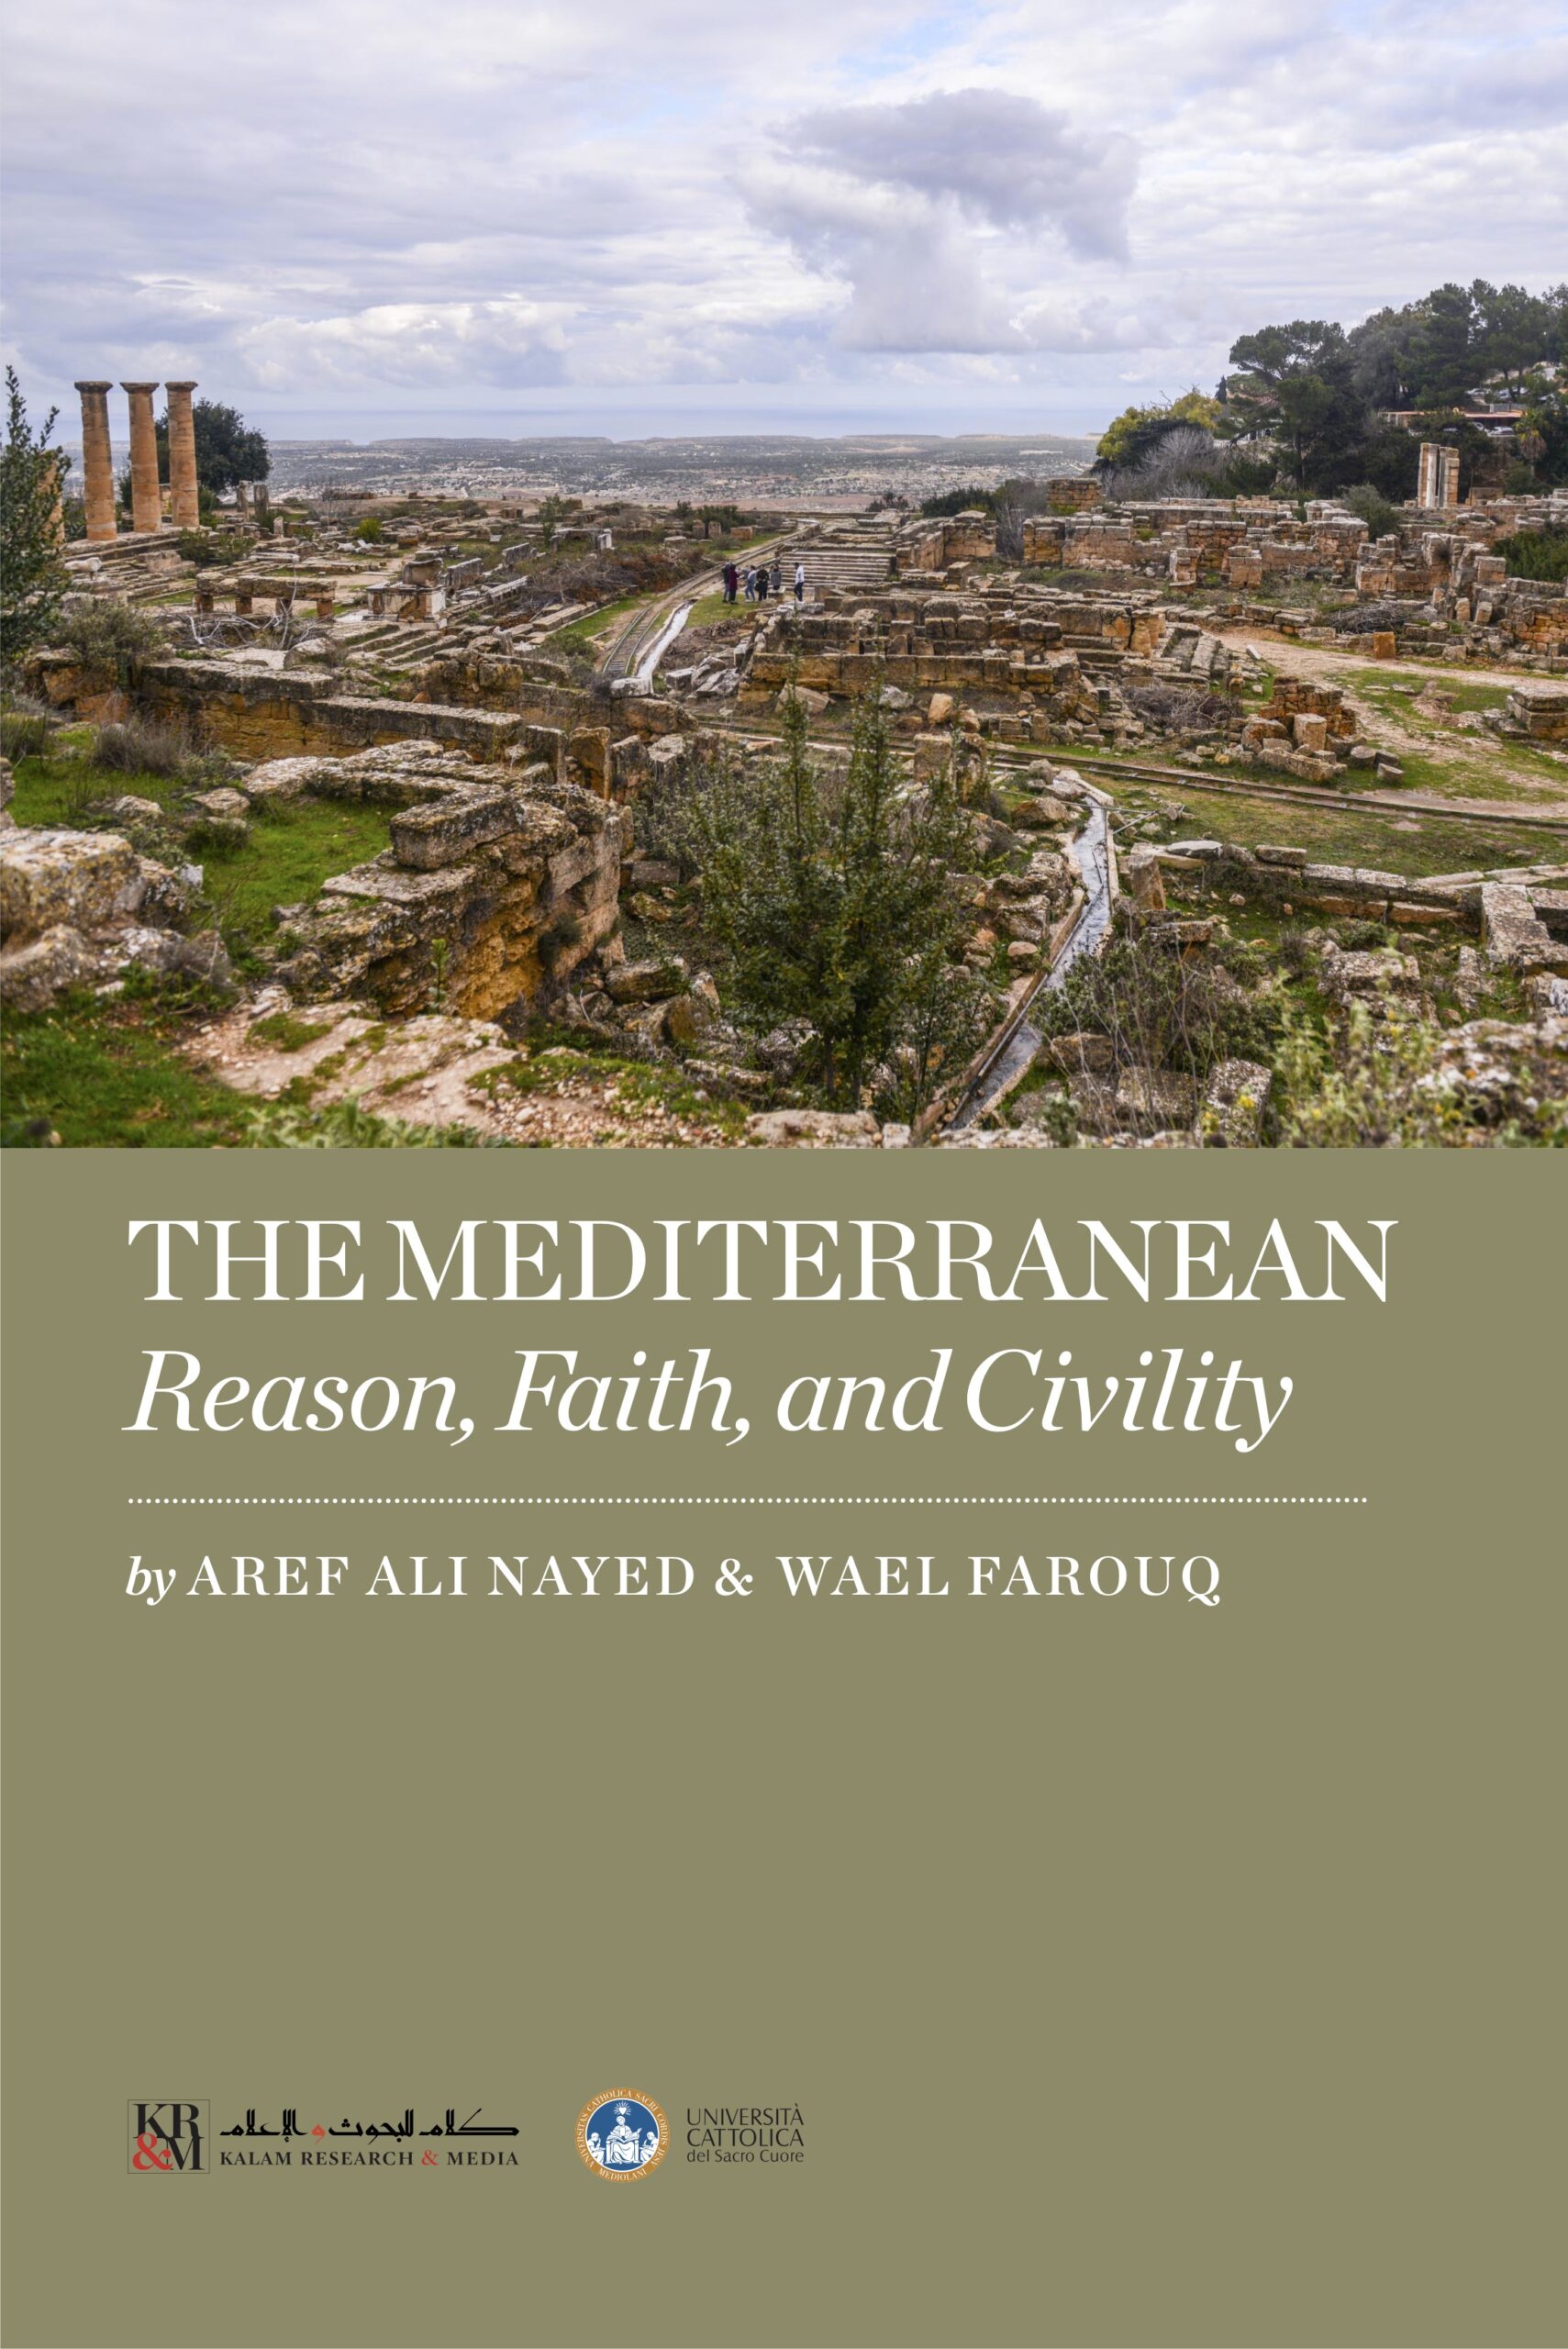 The Mediterranean: Reason, Faith, and Civility